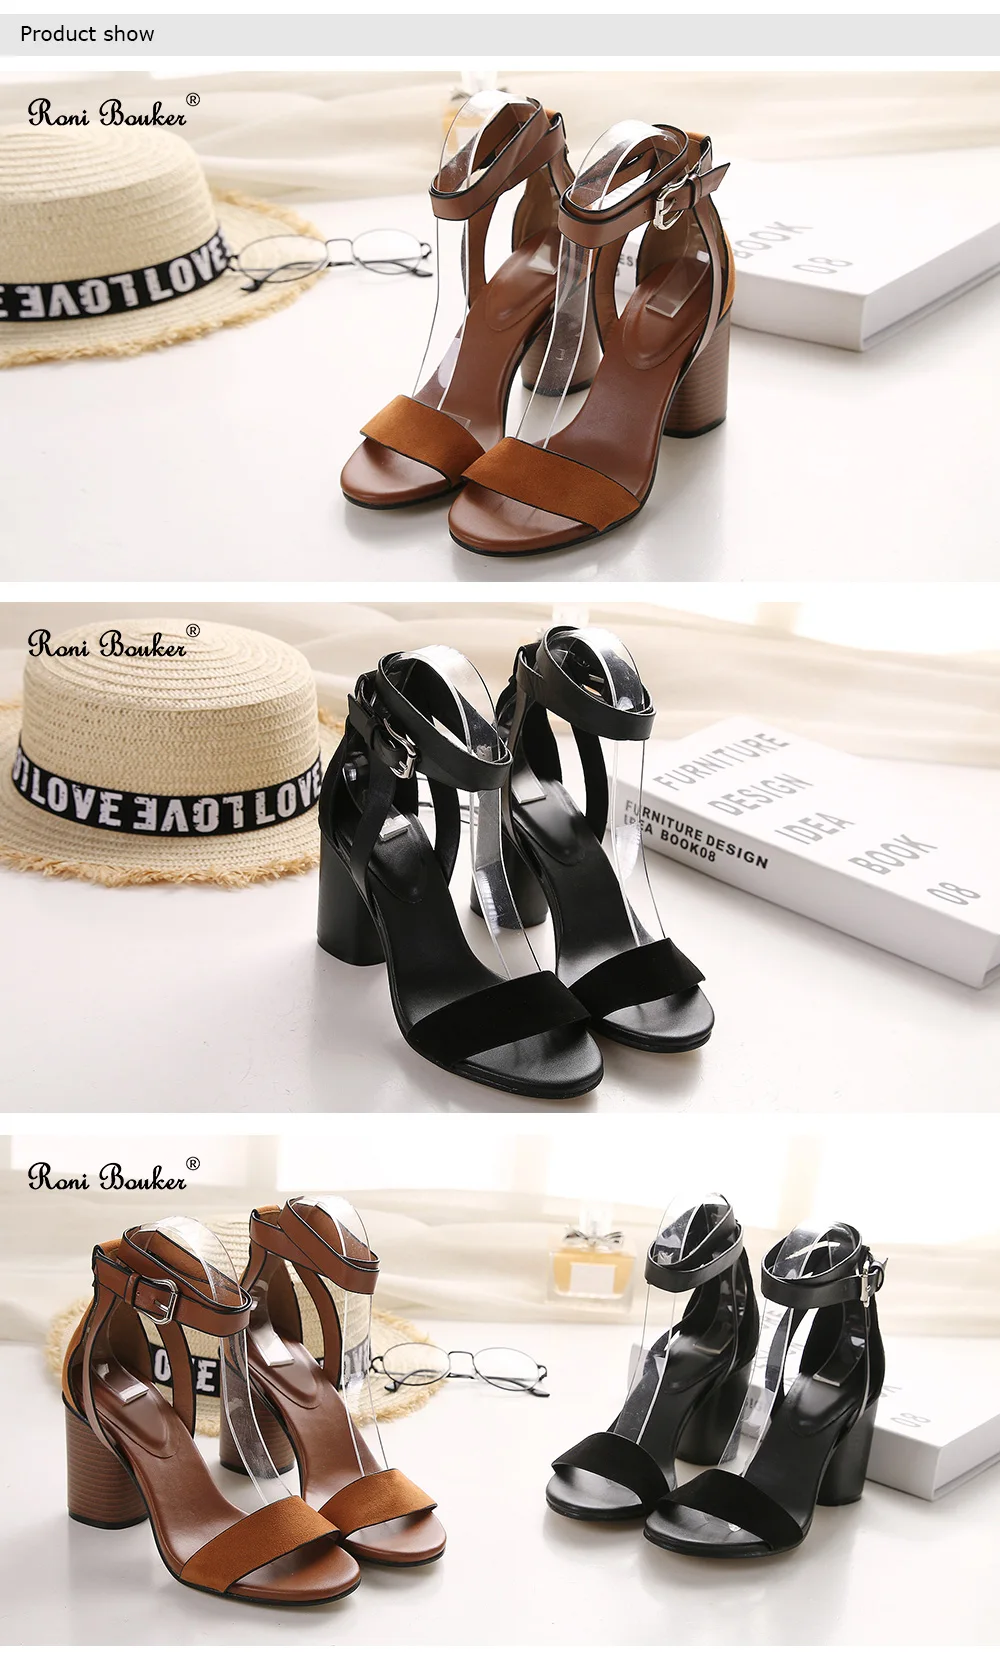 Roni Bouker/женские Босоножки на каблуке с ремешком на щиколотке Летняя обувь женские Босоножки с открытым носком на высоком массивном каблуке под вечернее платье большие размеры; цвет черный, коричневый